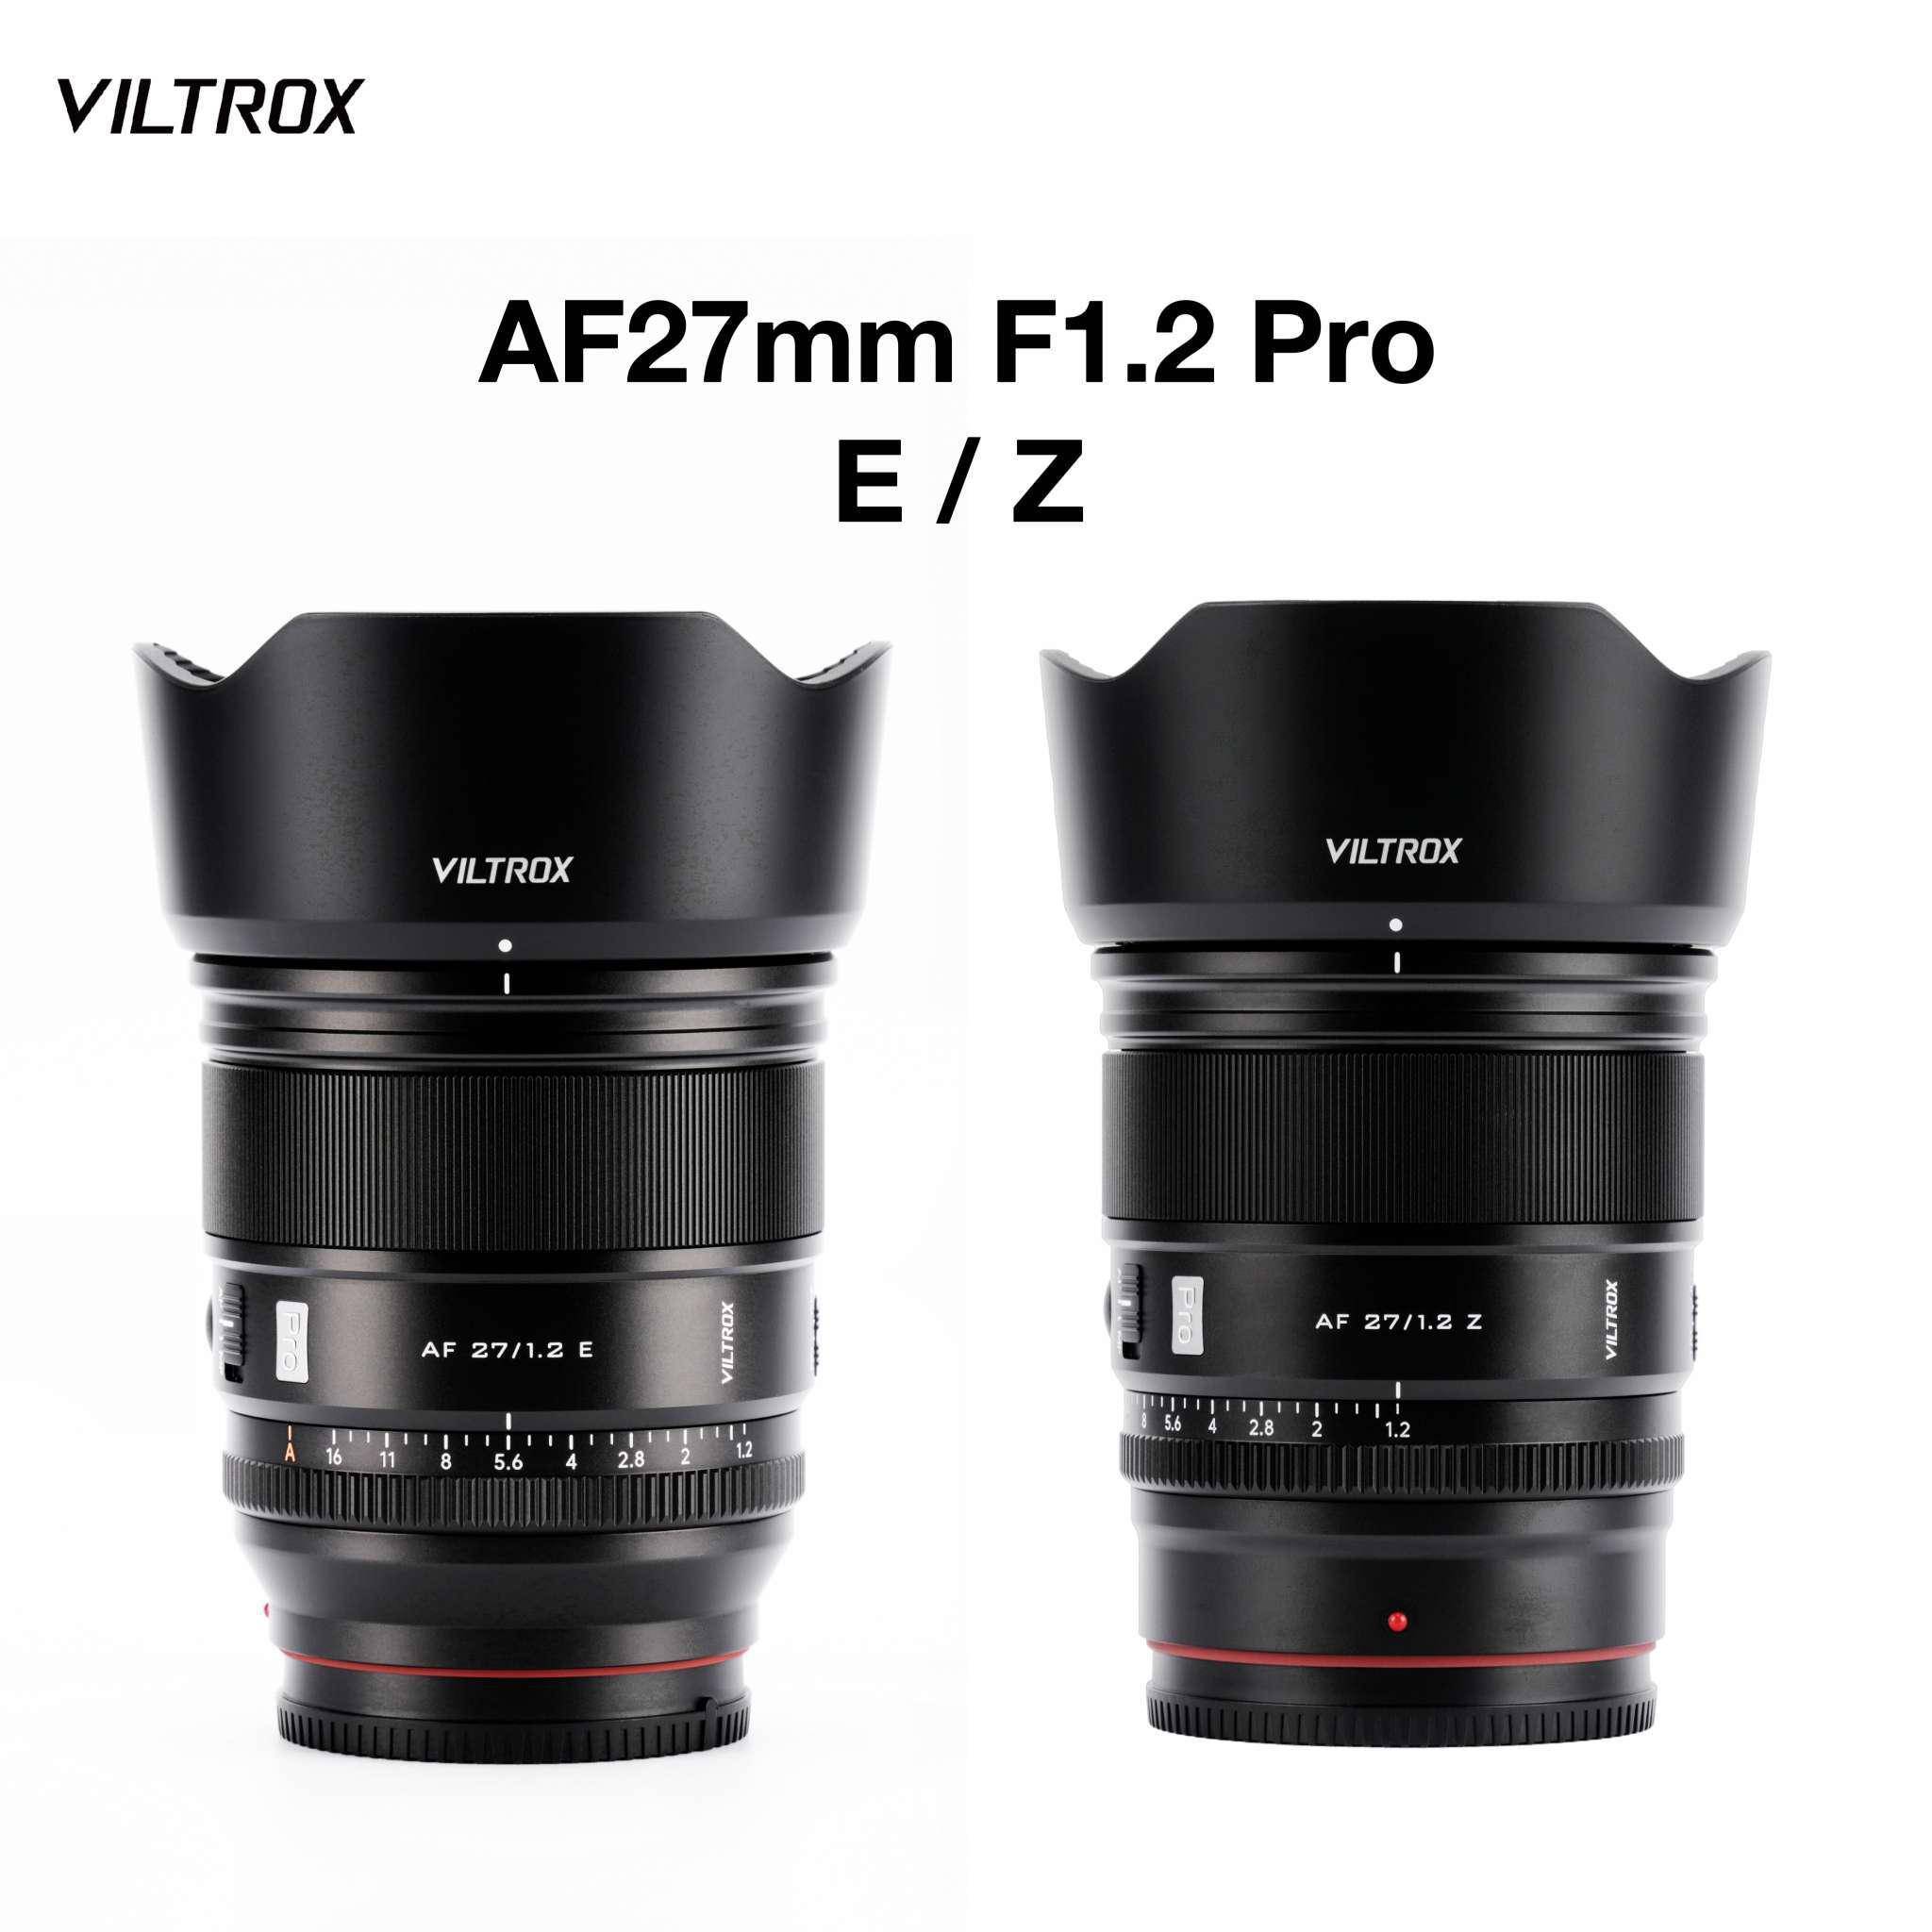     唯卓仕推出尼康Z和索尼E卡口版本的AF 27mm F1.2 Pro镜头 